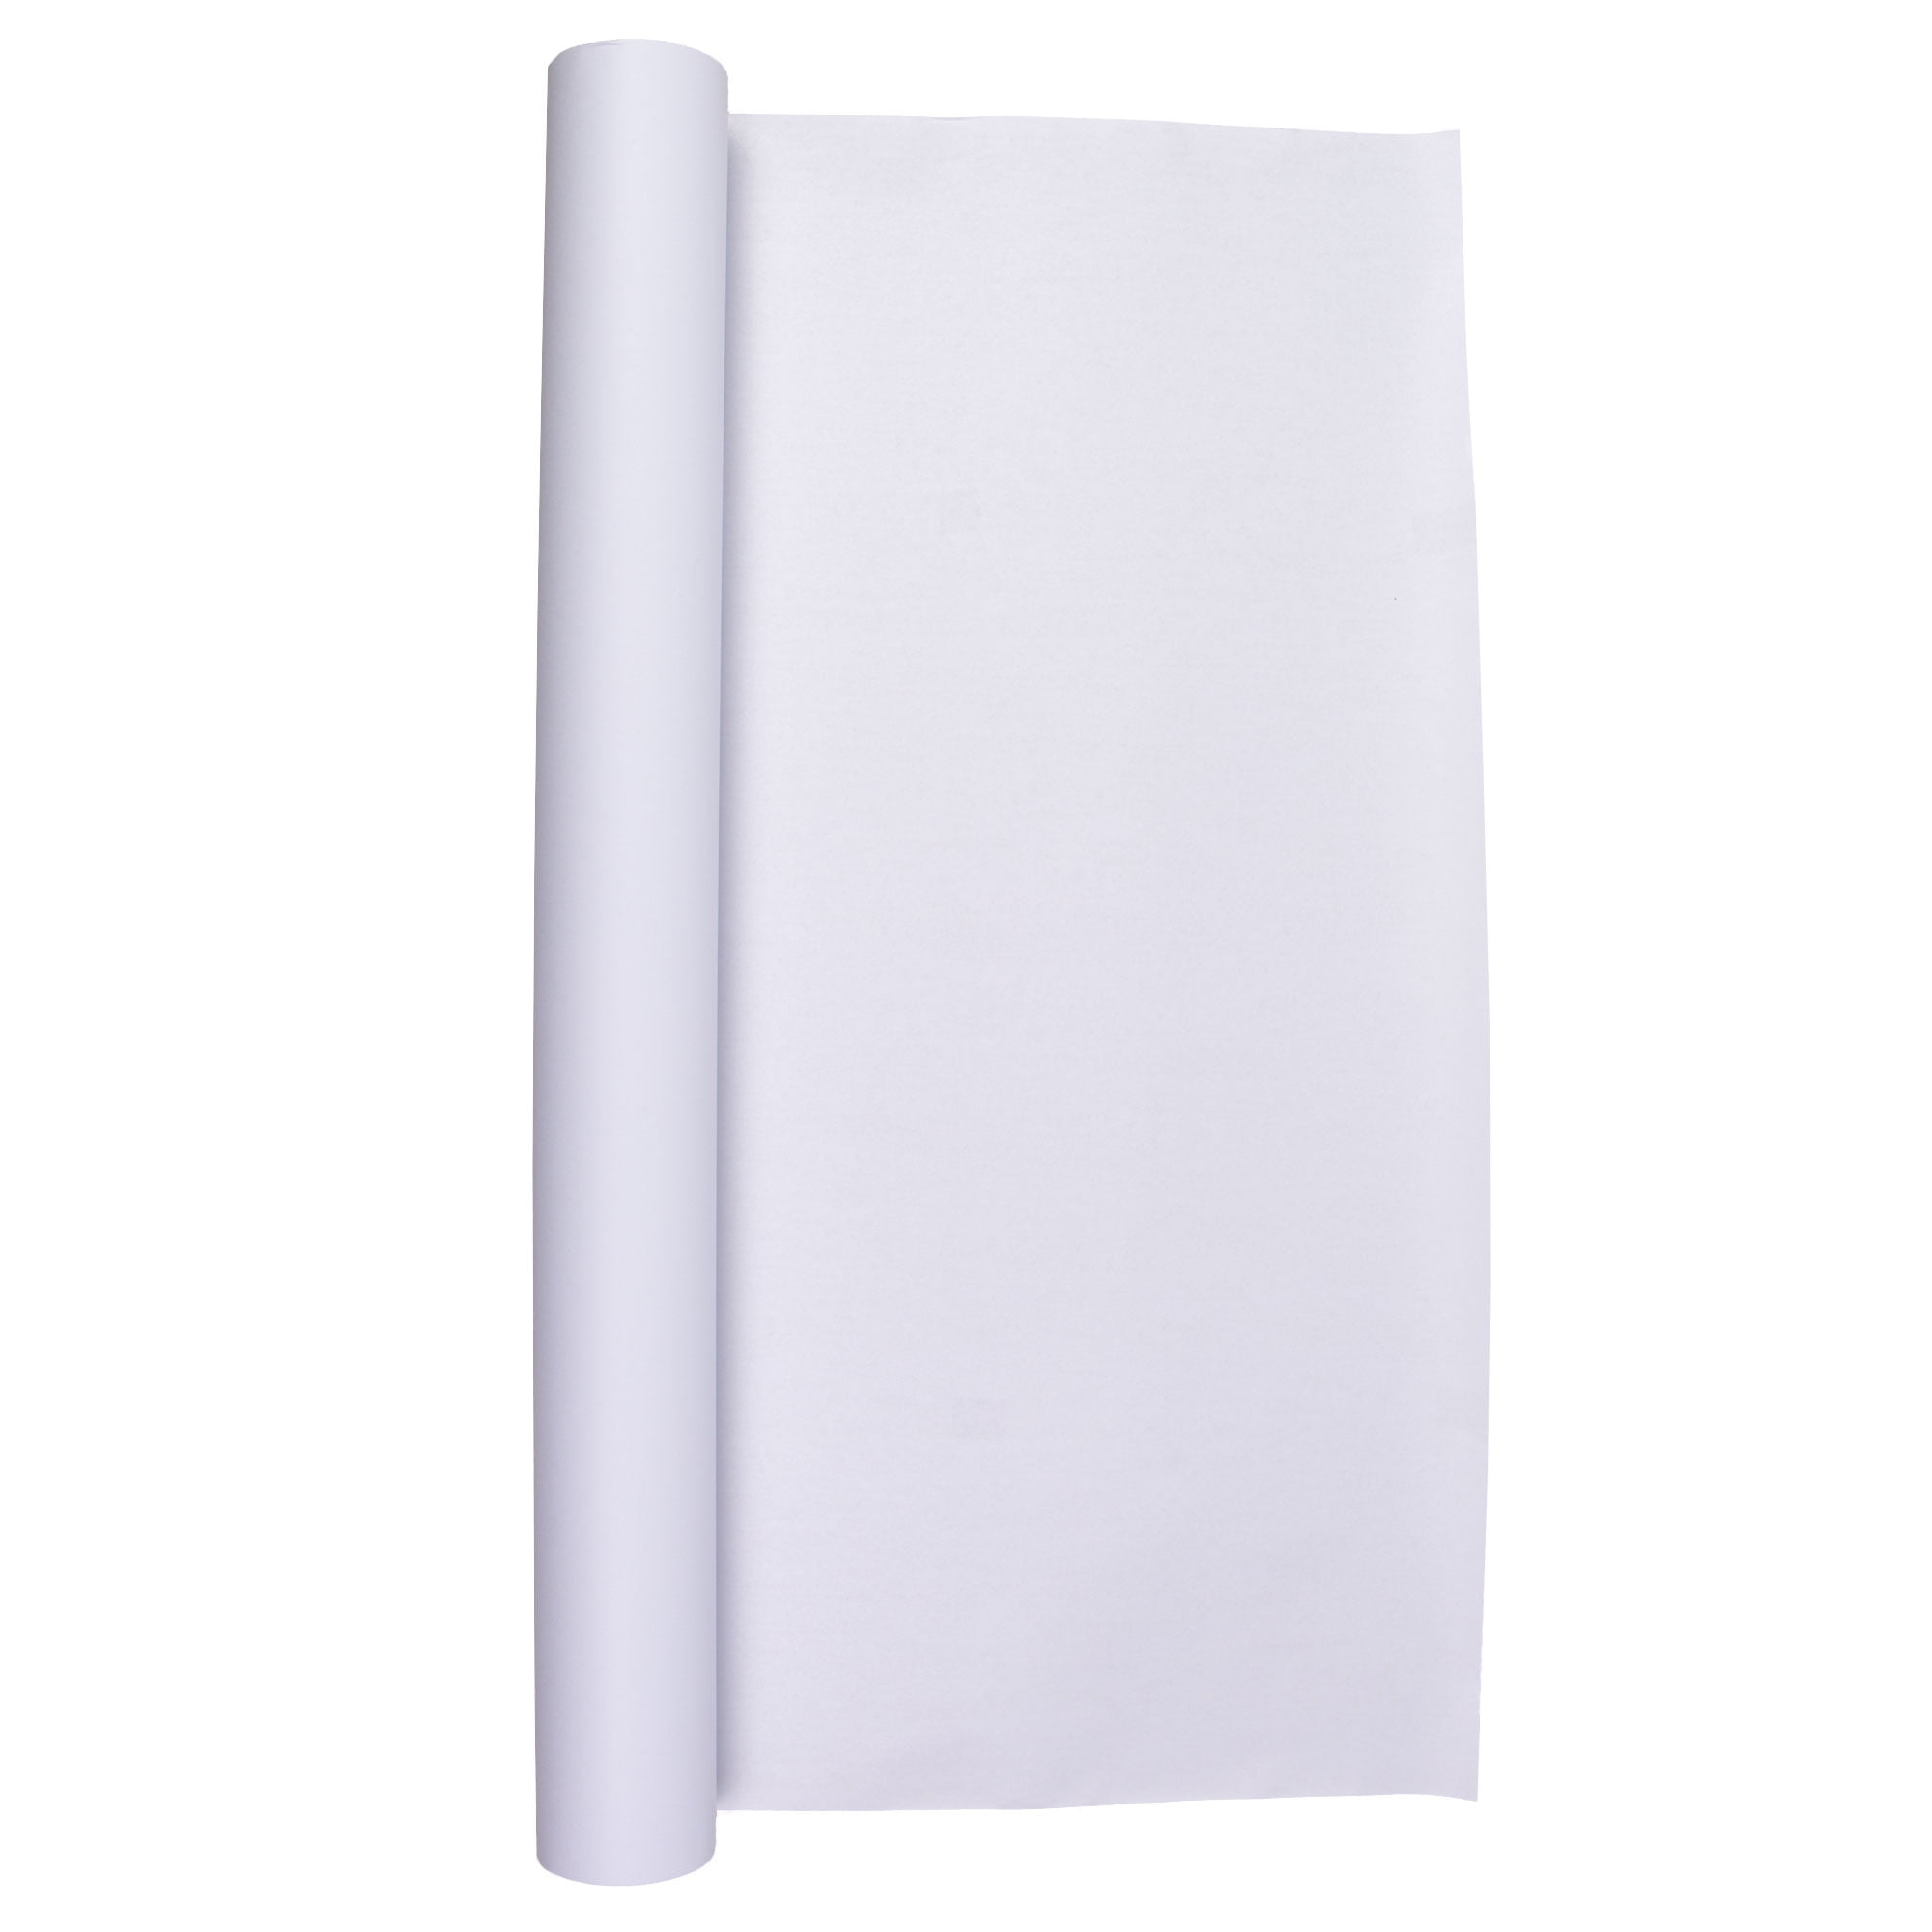 White paper roll long design for web banner Stock Vector by ©voinSveta  153136138